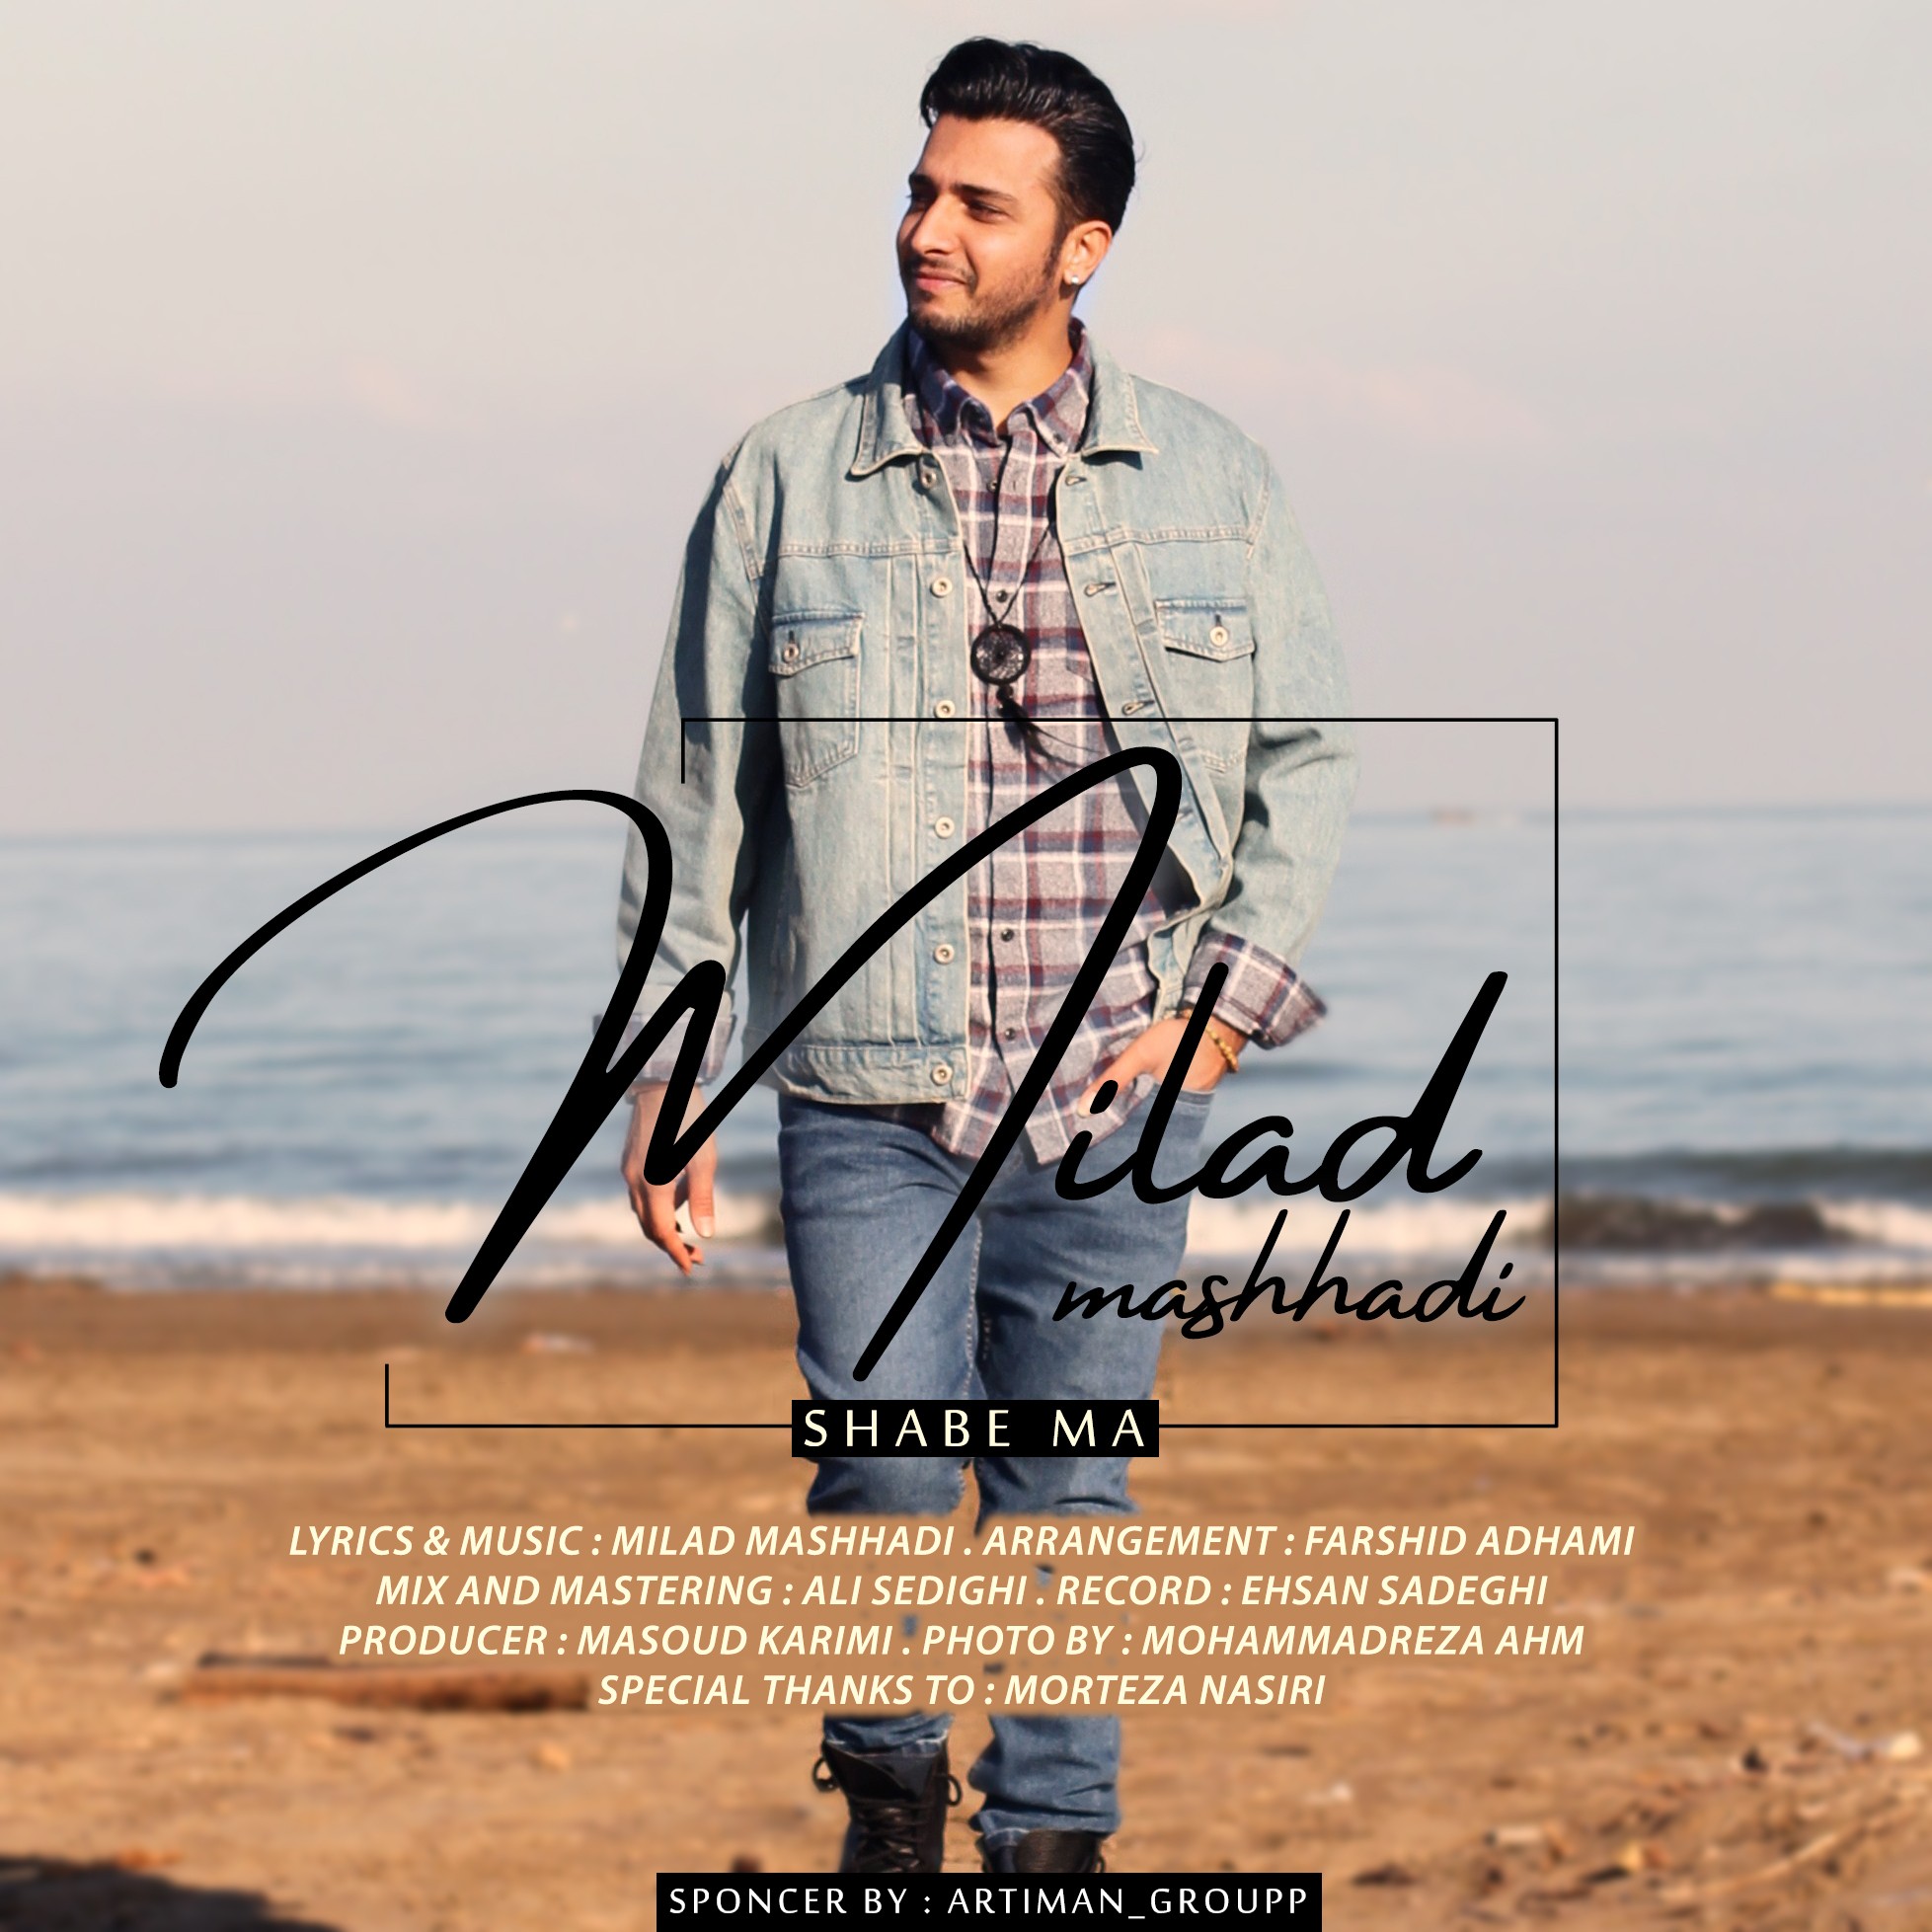  دانلود آهنگ جدید میلاد مشهدی - شب ما | Download New Music By Milad Mashhadi - Shabe Ma